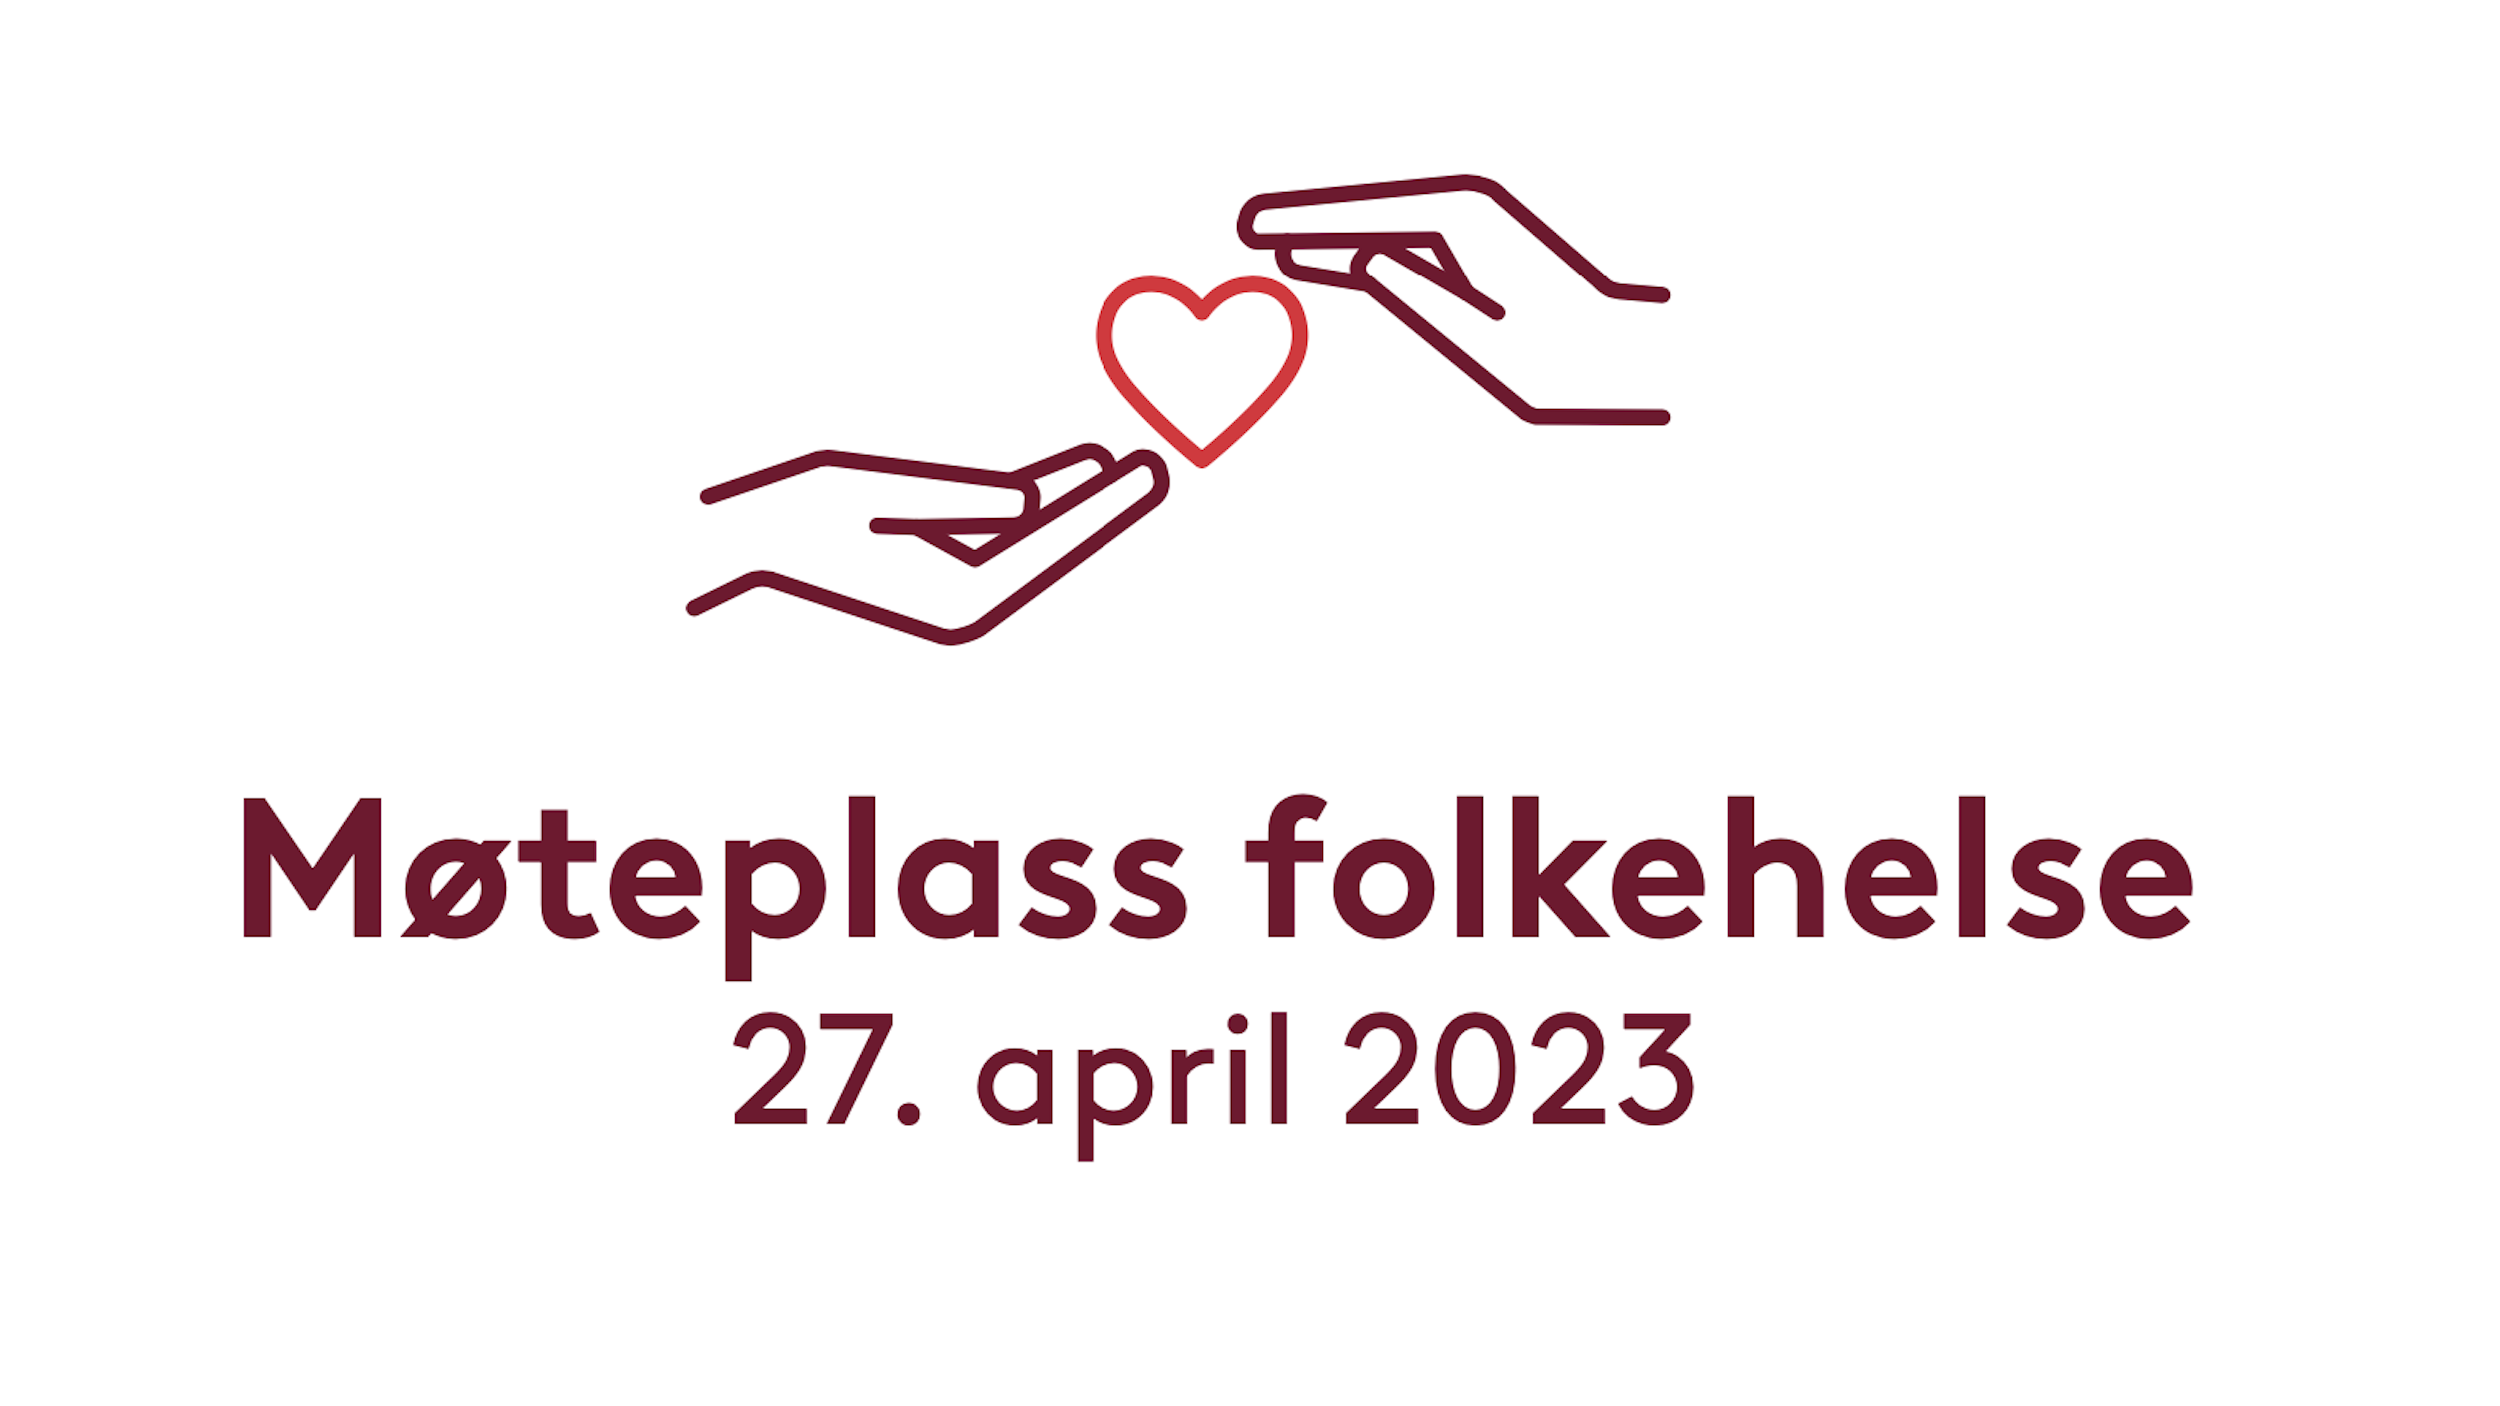 Tekst i bildet: Møteplass Folkehelse 27. april. Symbol viser to hender som holder rundt et hjerte